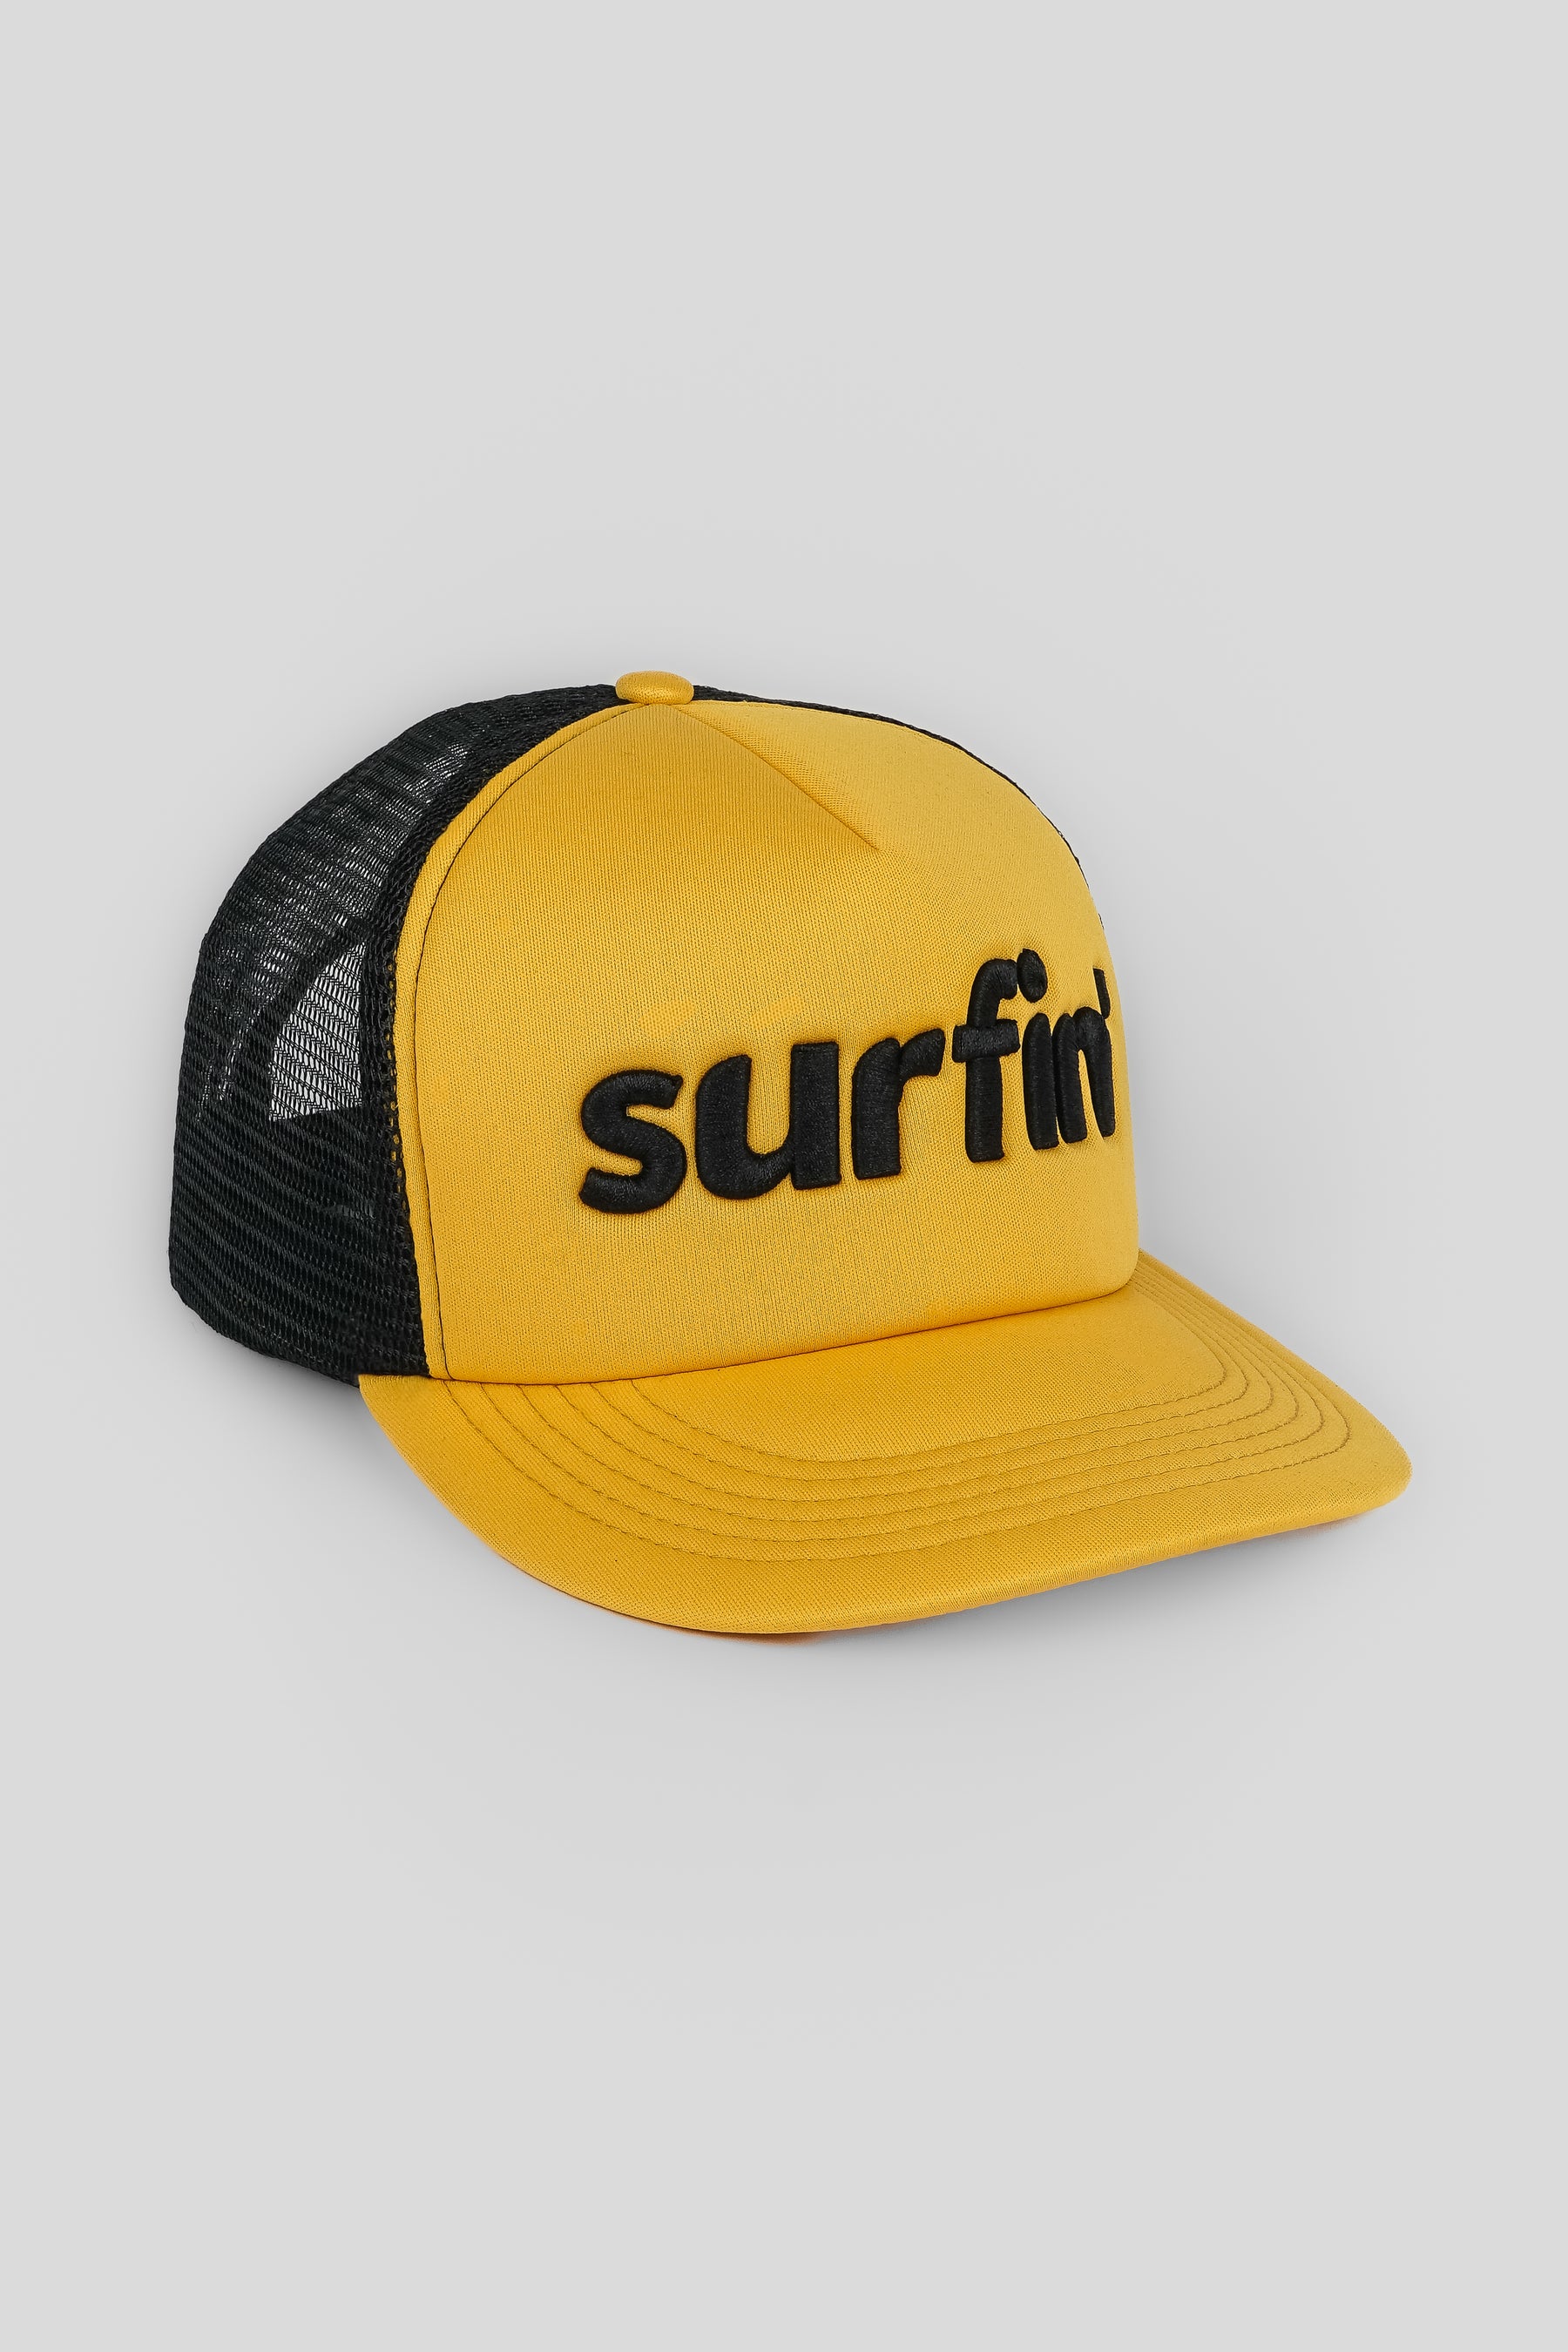 At håndtere picnic uudgrundelig SURFIN' TRUCKER HAT